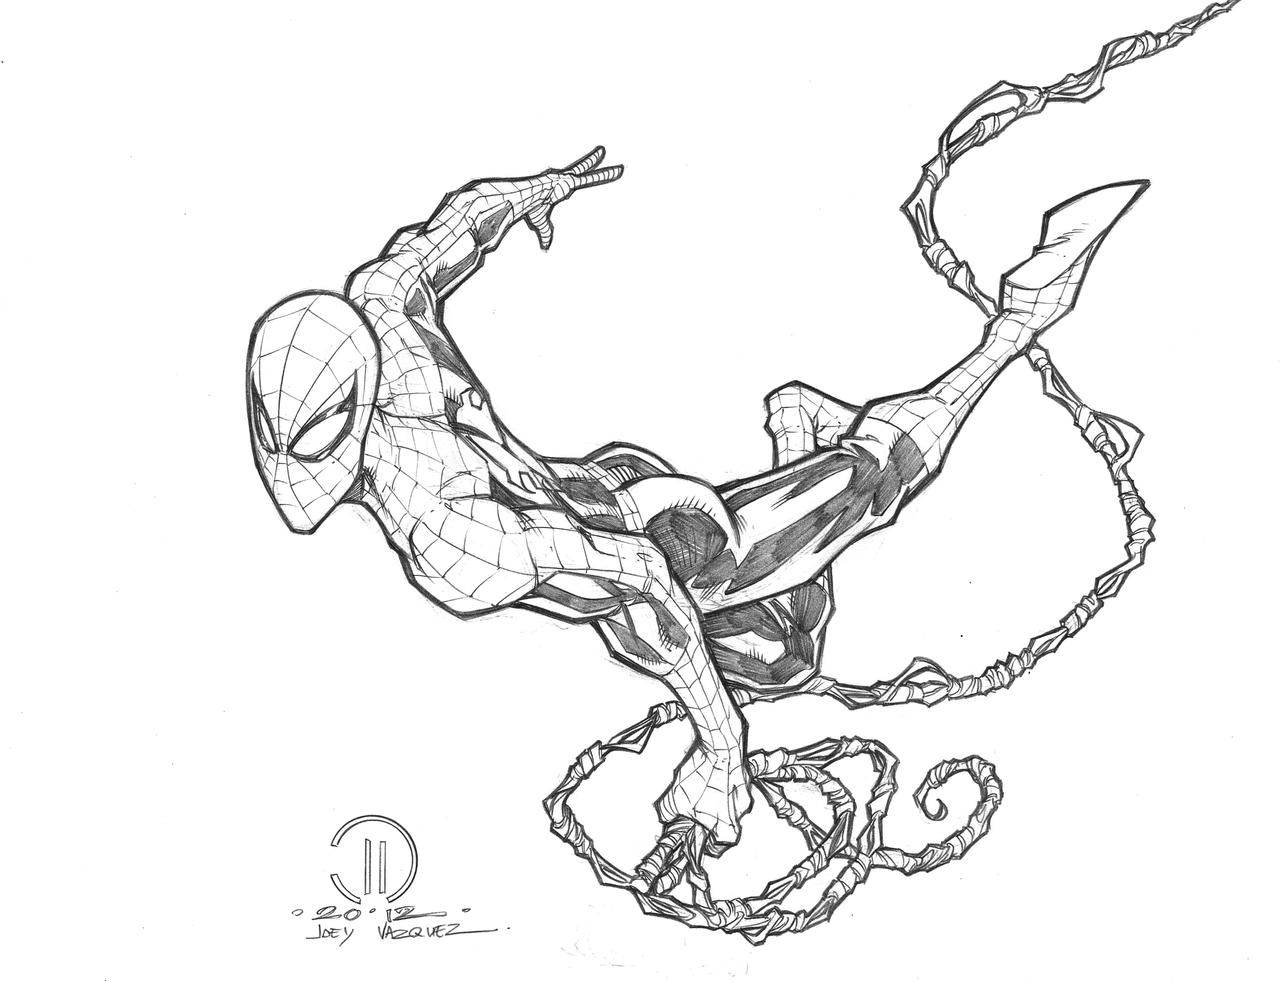 spiderman_swinging_penciles_by_joeyvazquez-d5m0sbe.jpg